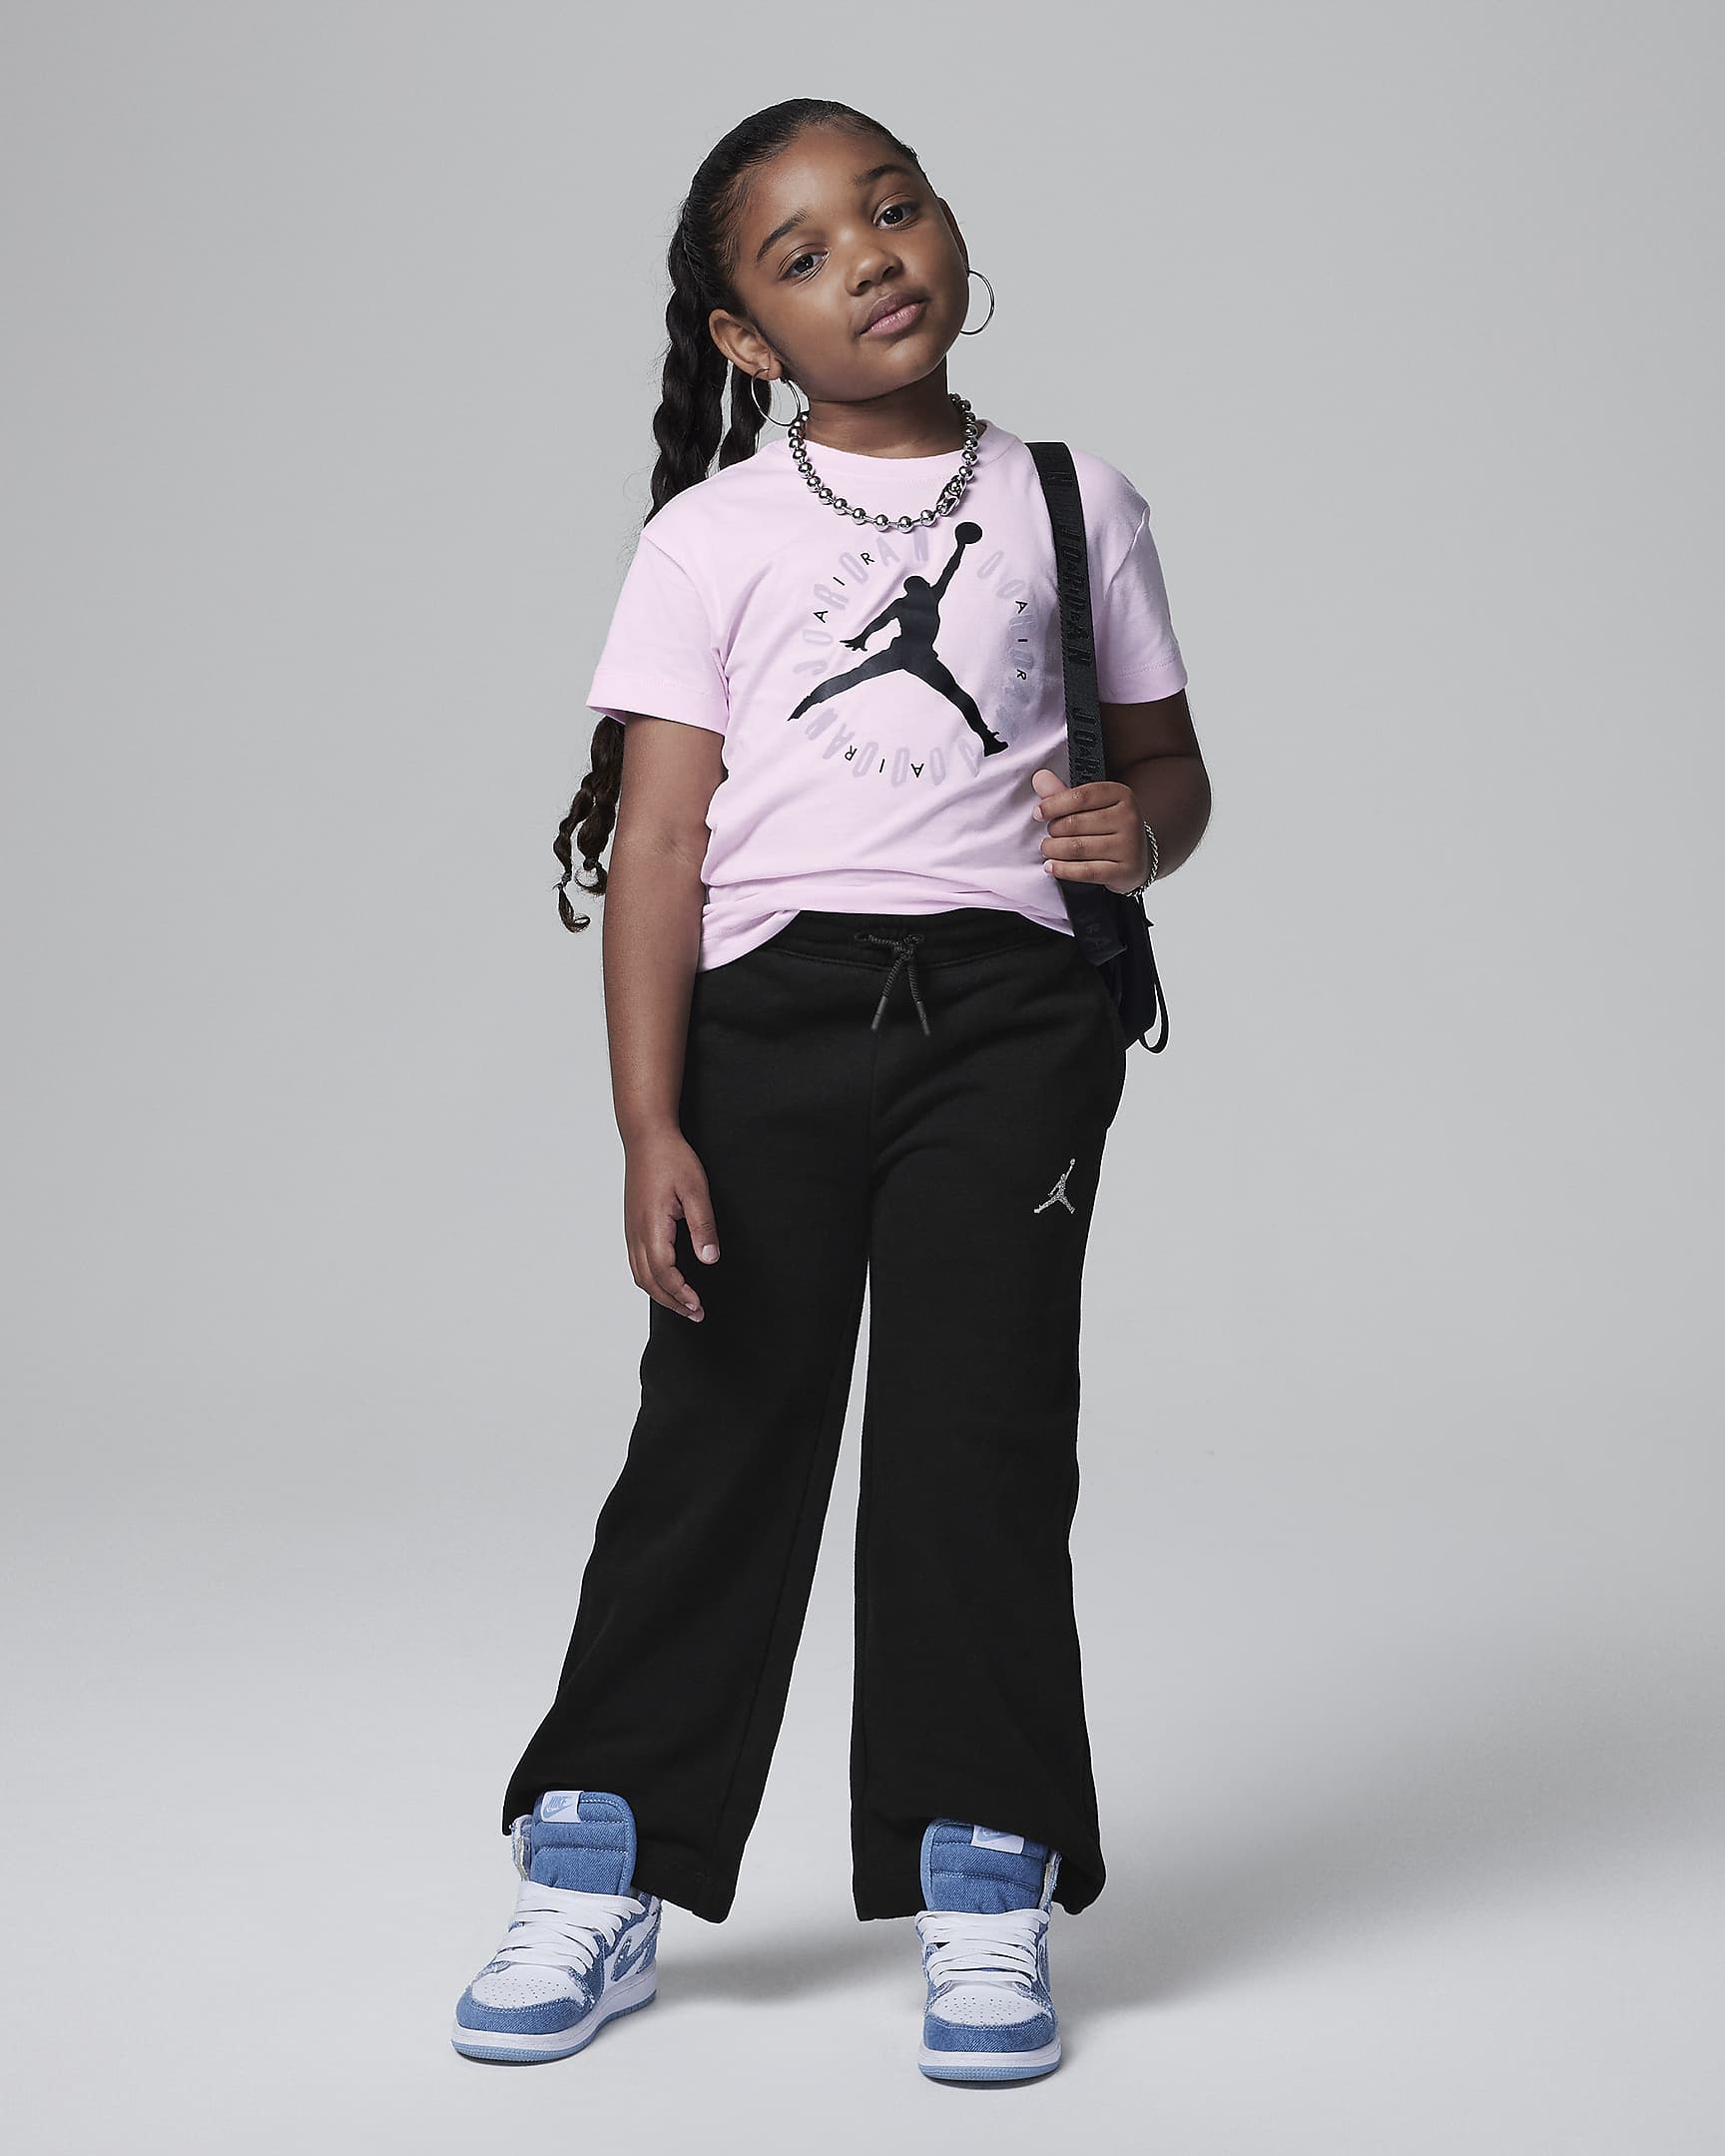 Jordan Soft Touch Tee Little Kids T-Shirt. Nike.com